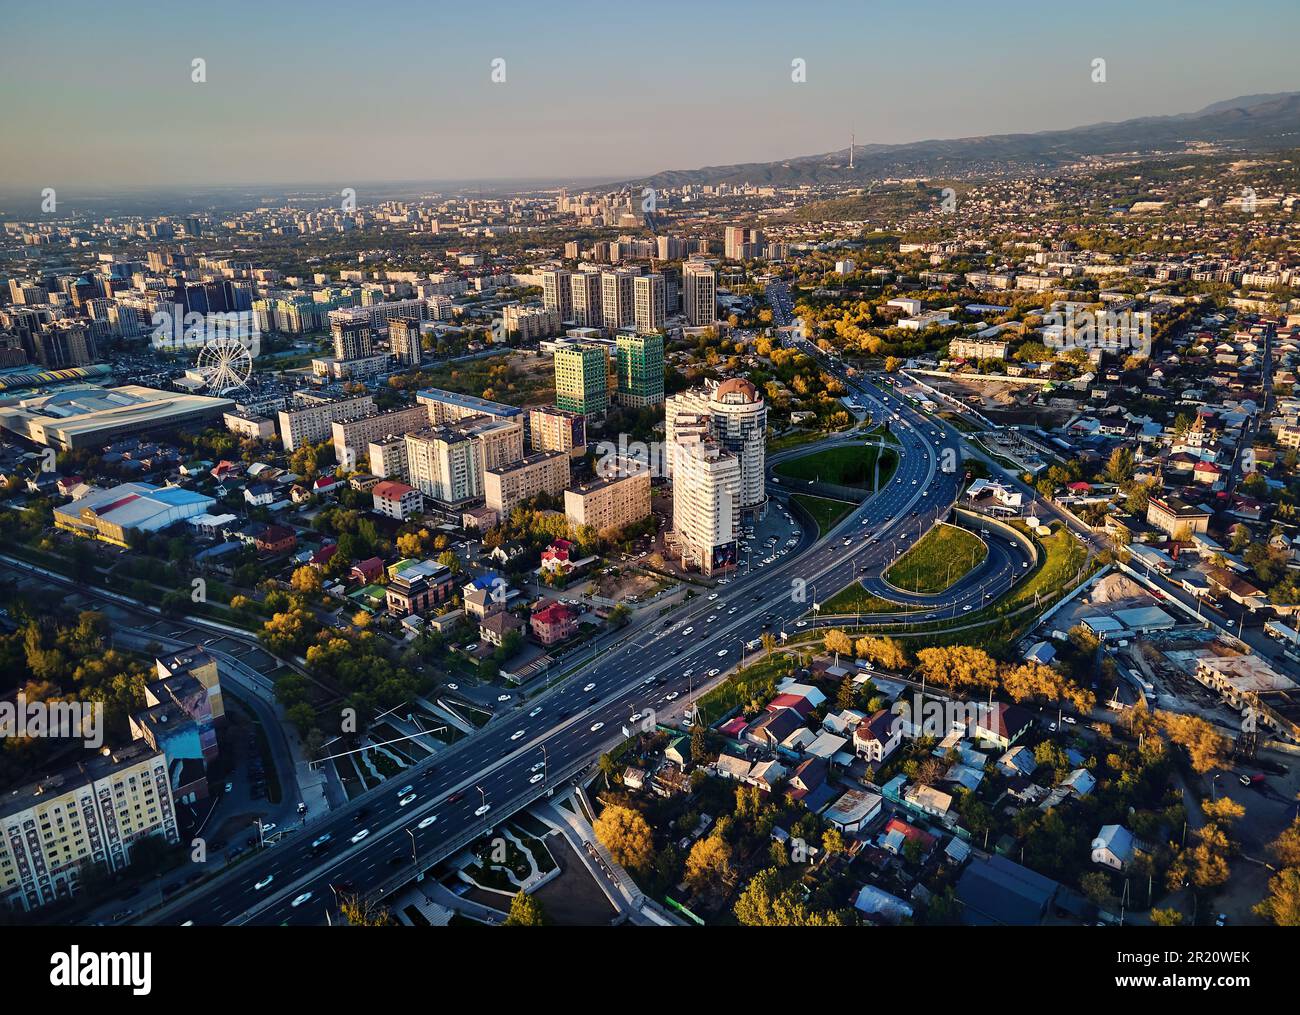 Vue aérienne de drone panoramique de l'avenue Alfarabi avec circulation de voitures et de grands bâtiments dans la ville d'Almaty, Kazakhstan Banque D'Images